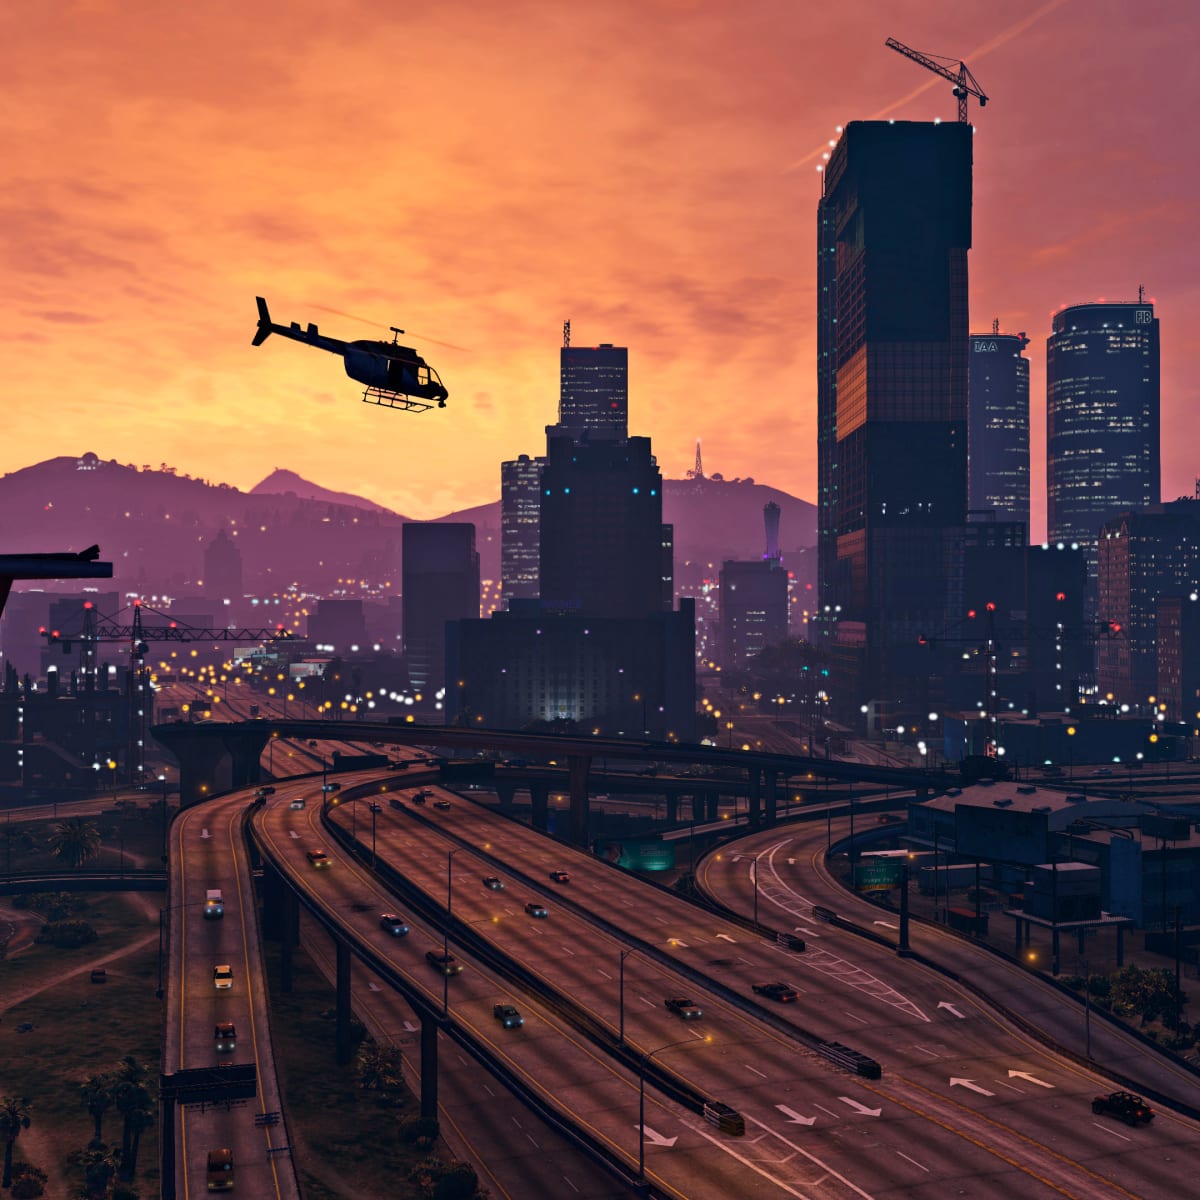 Grand Theft Auto VI Trailer Drops December 5